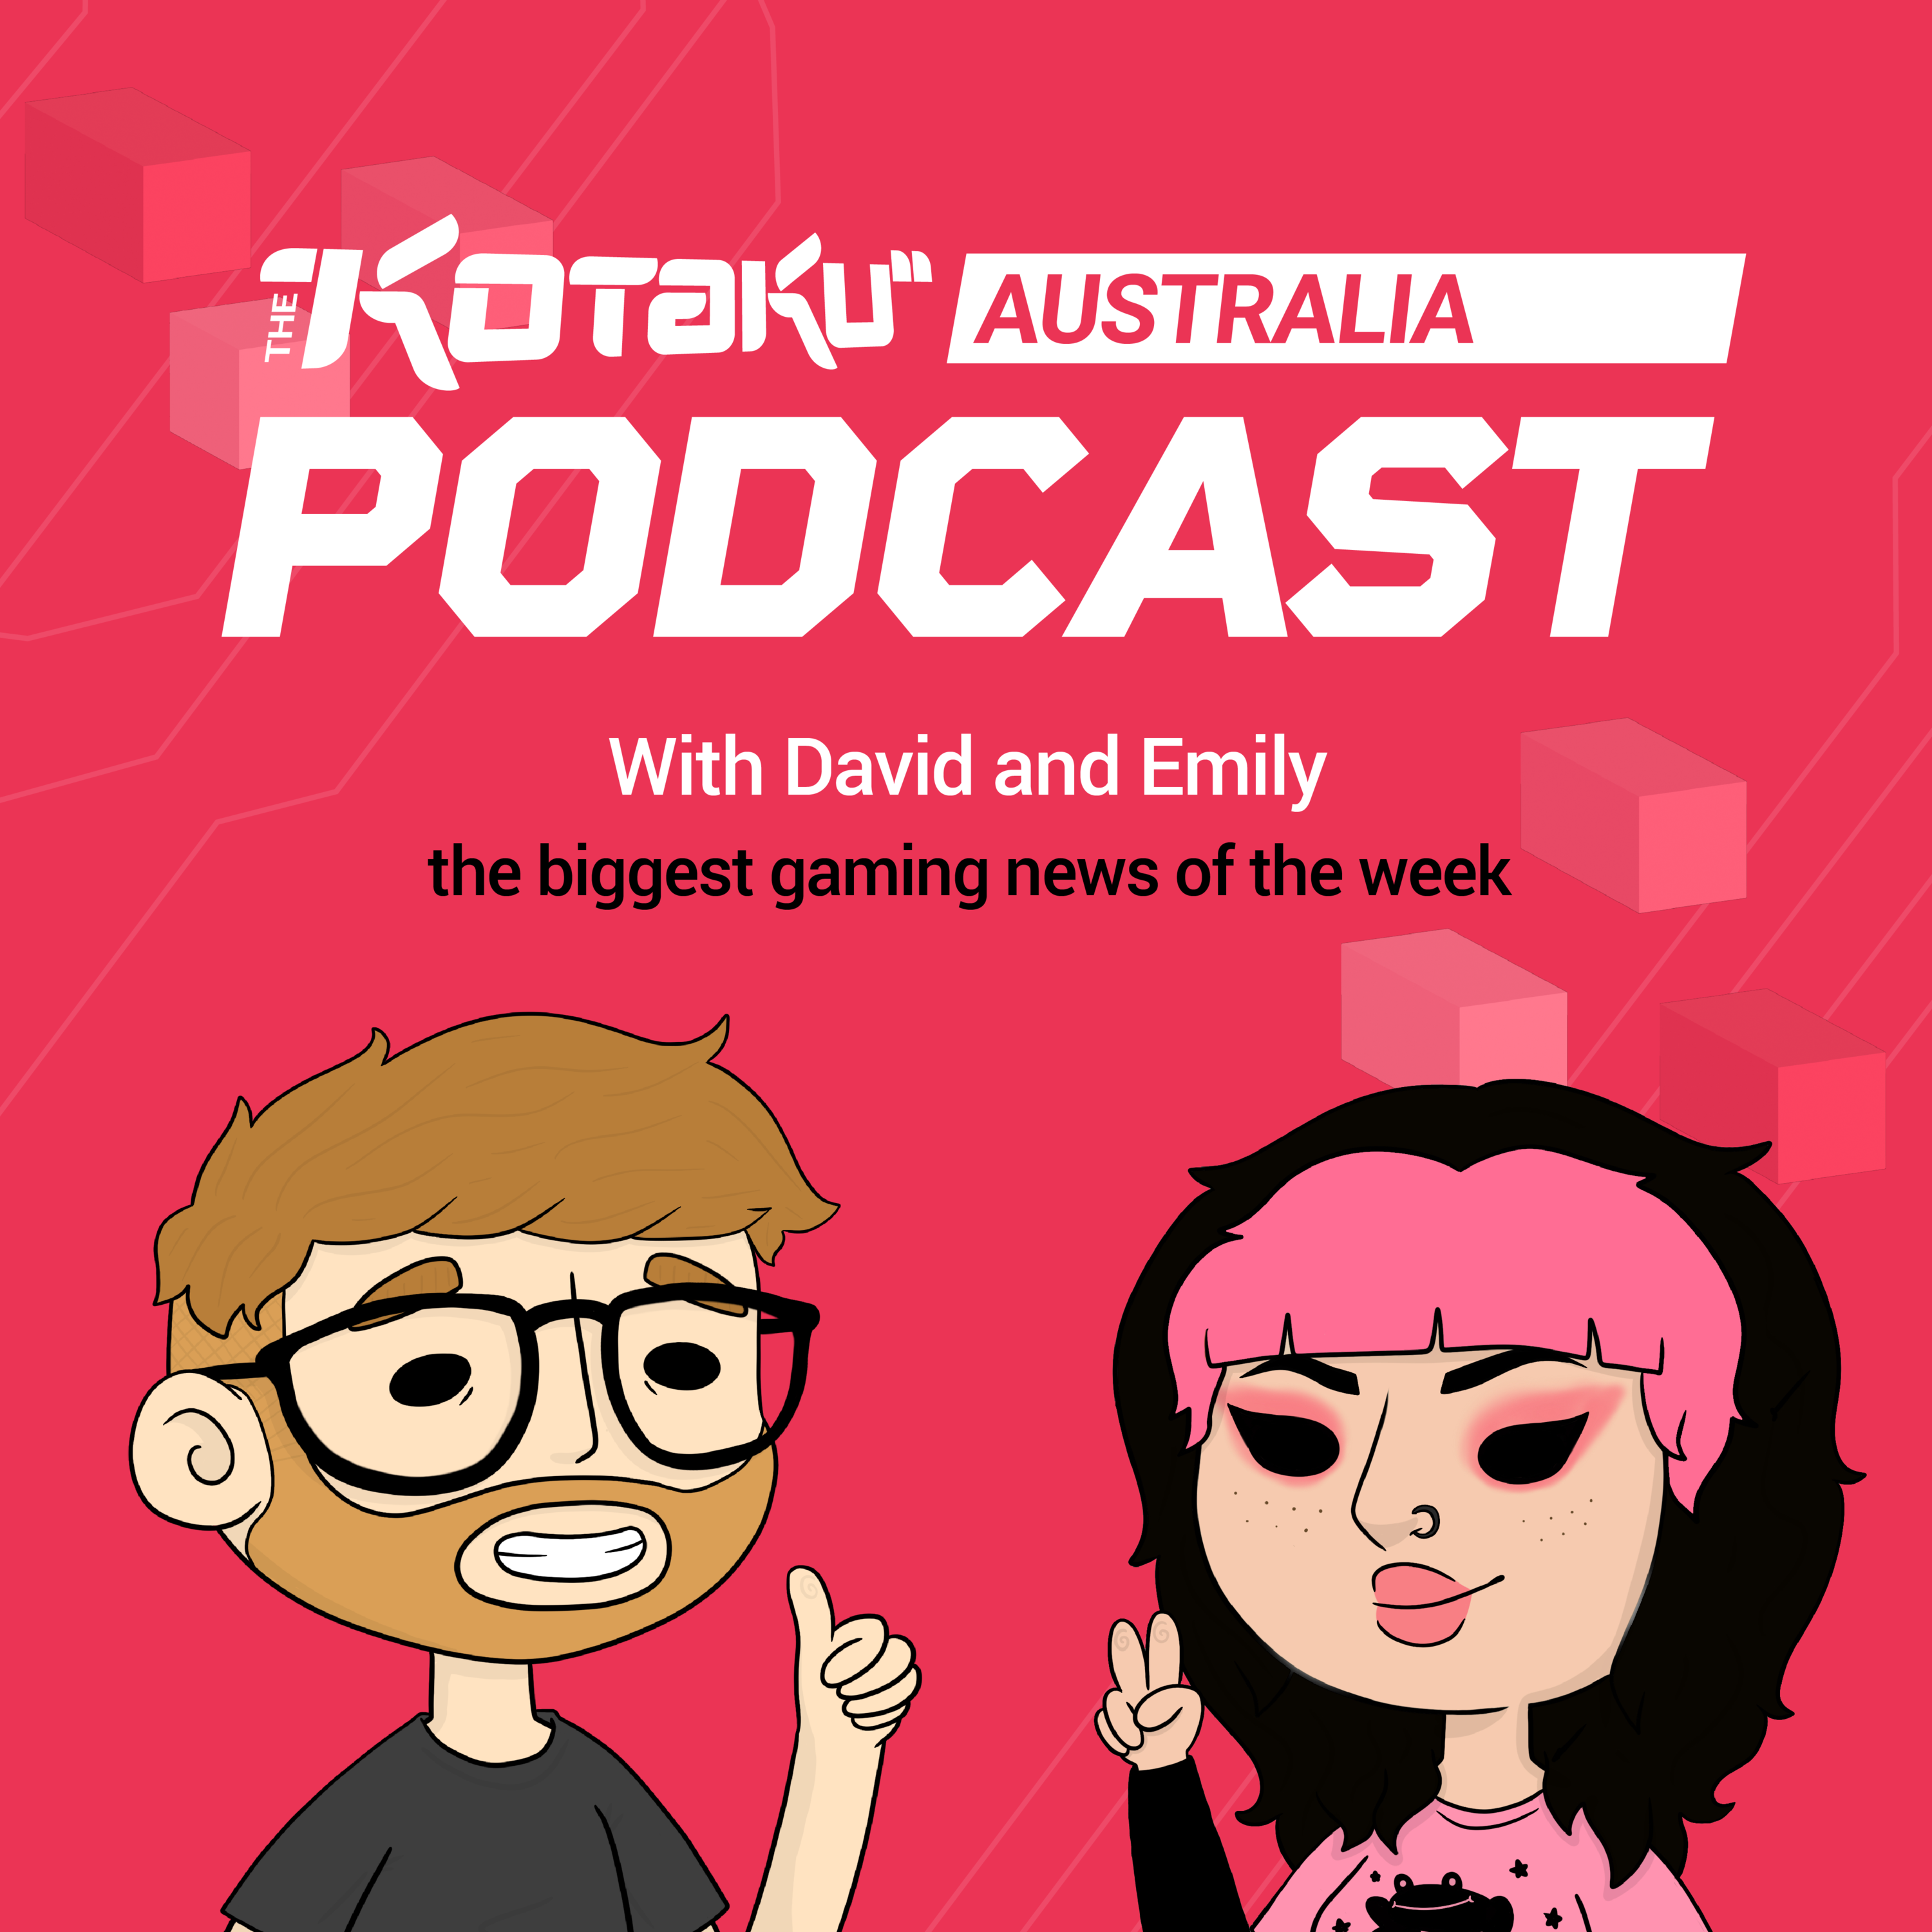 The Kotaku Australia Podcast